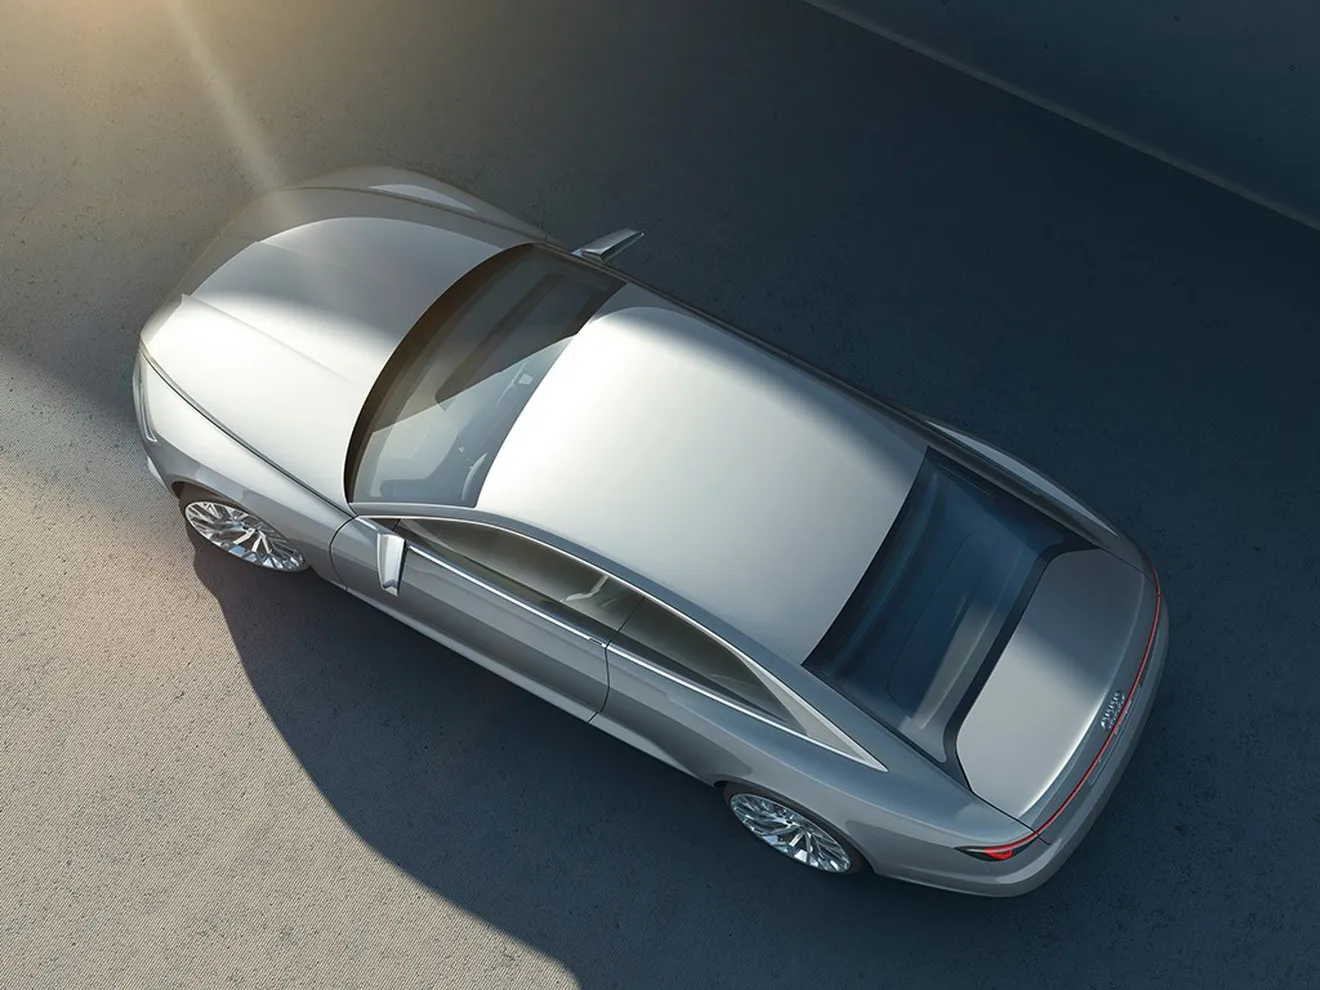 Audi Prologue Concept, el inicio de una nueva filosofía de diseño